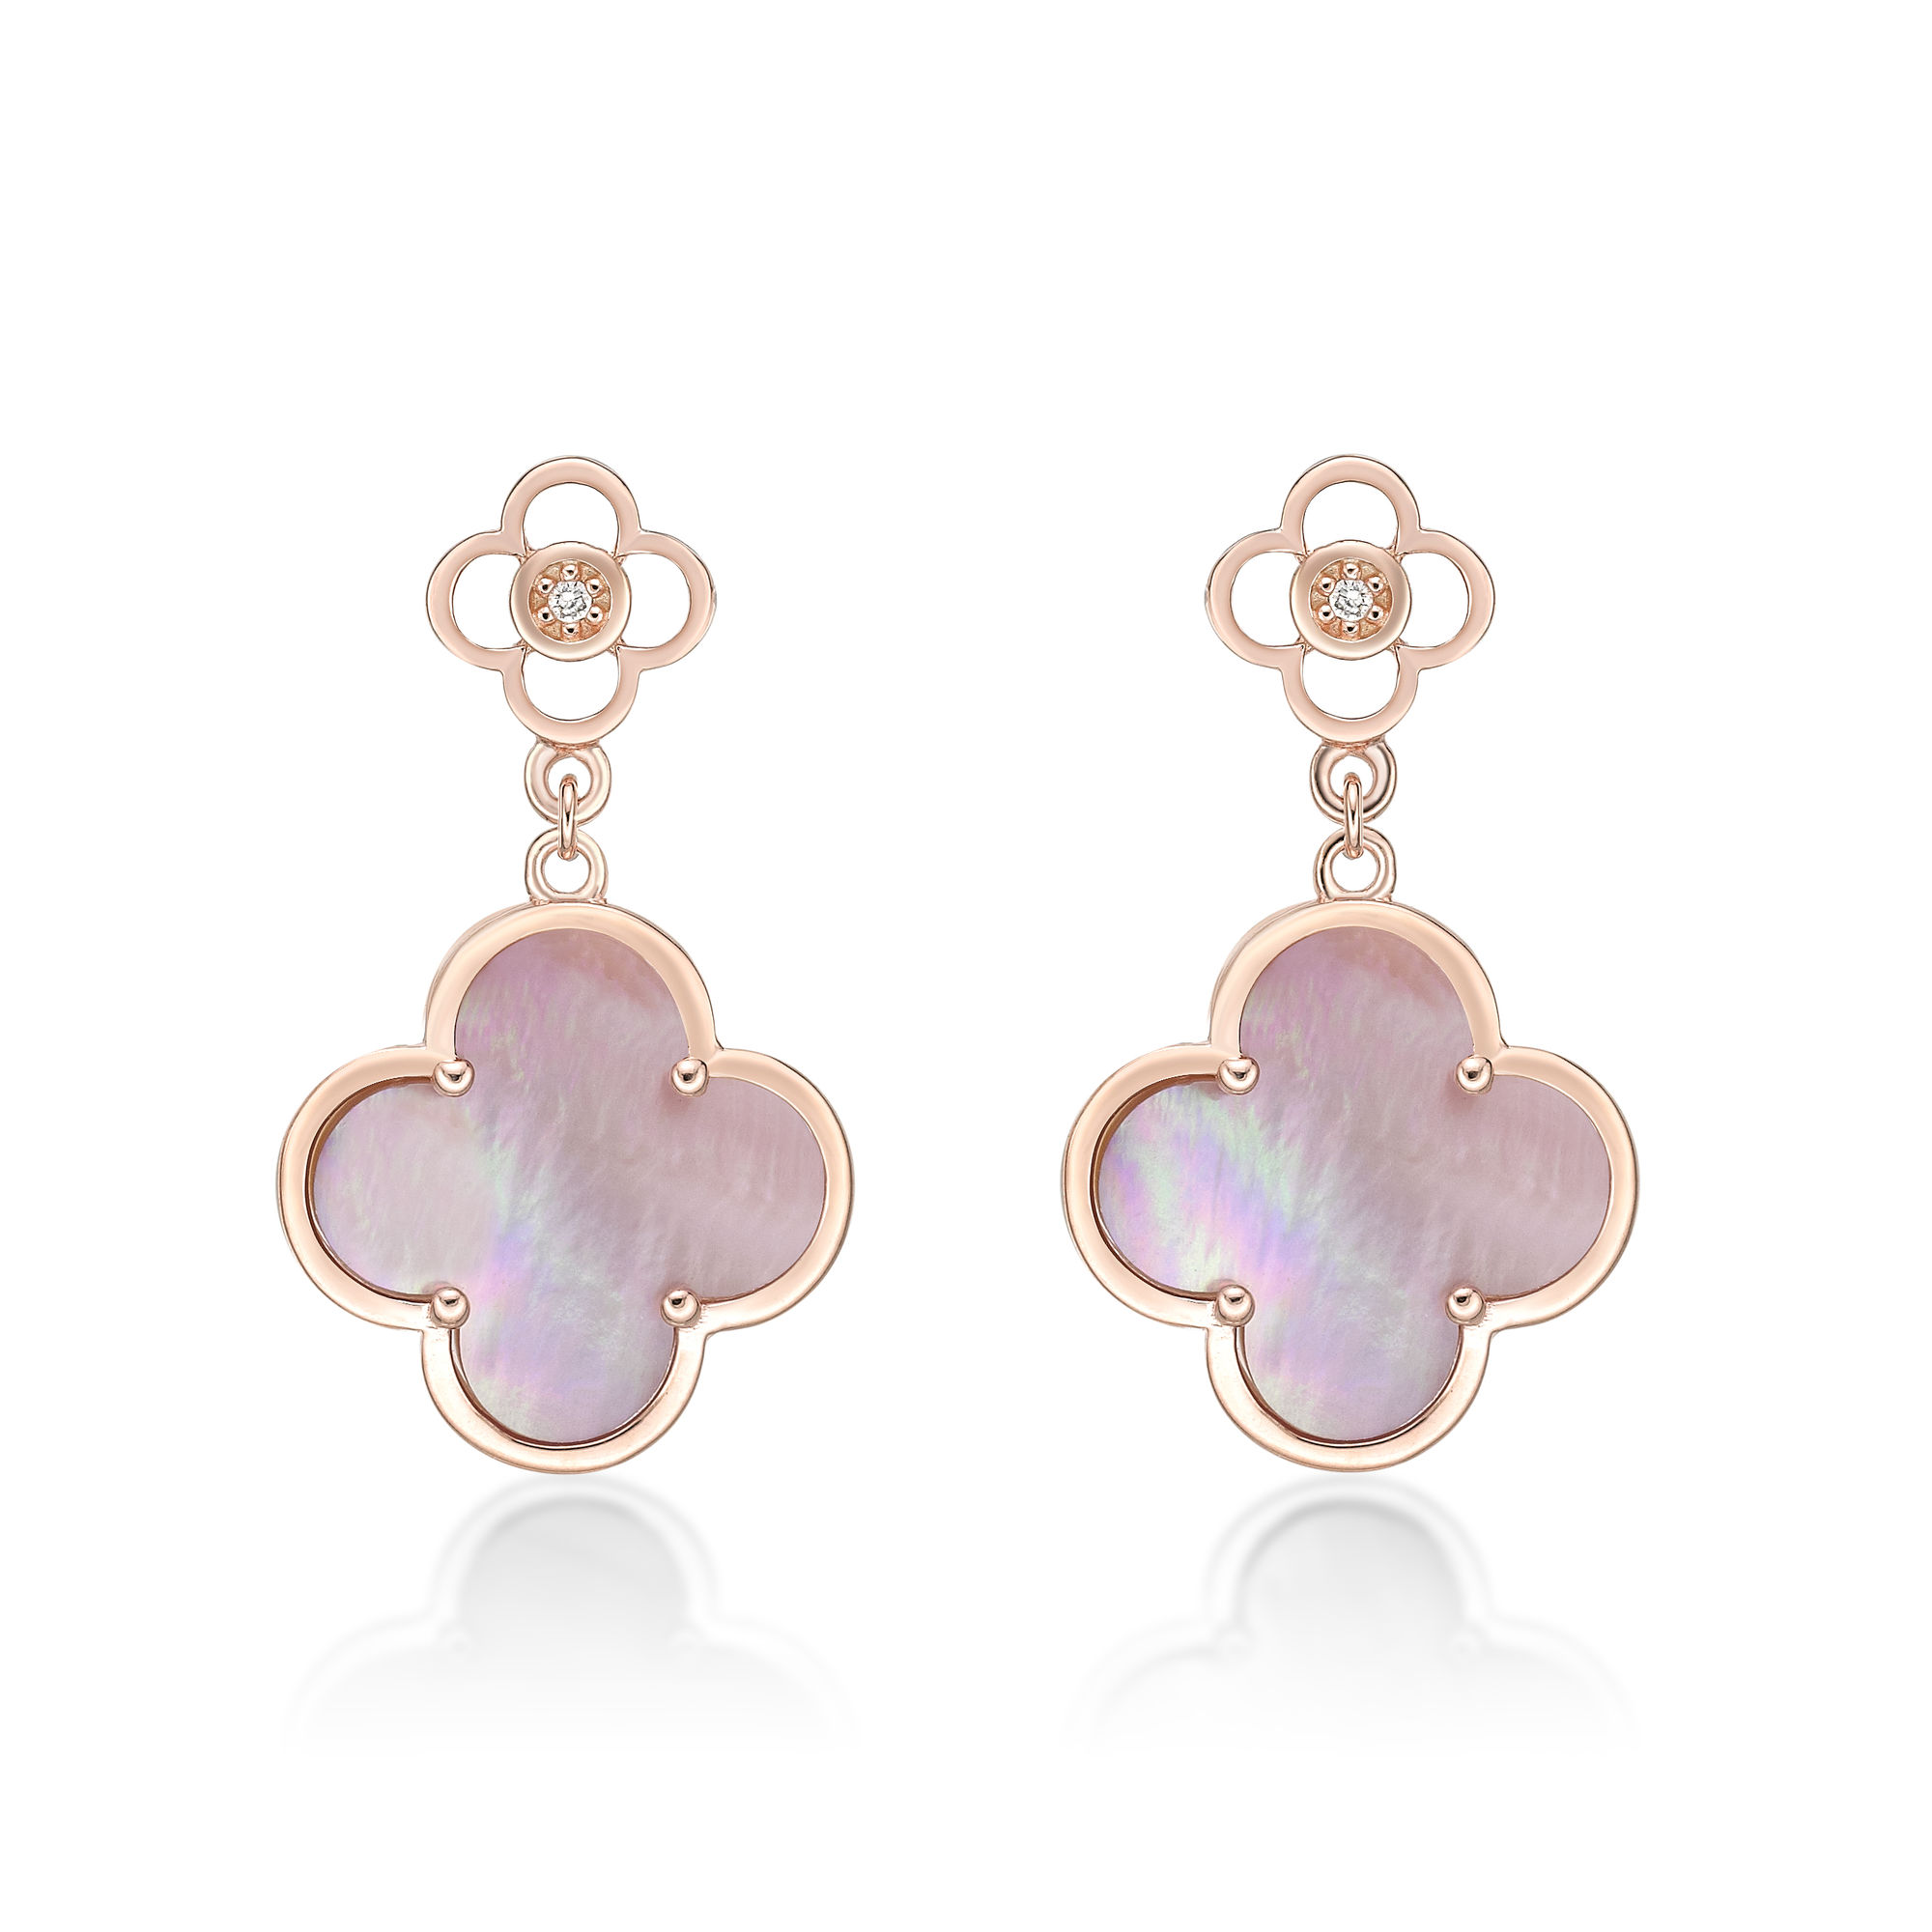 48814-earrings-fashion-jewelry-pink-sterling-silver-48814-2.jpg